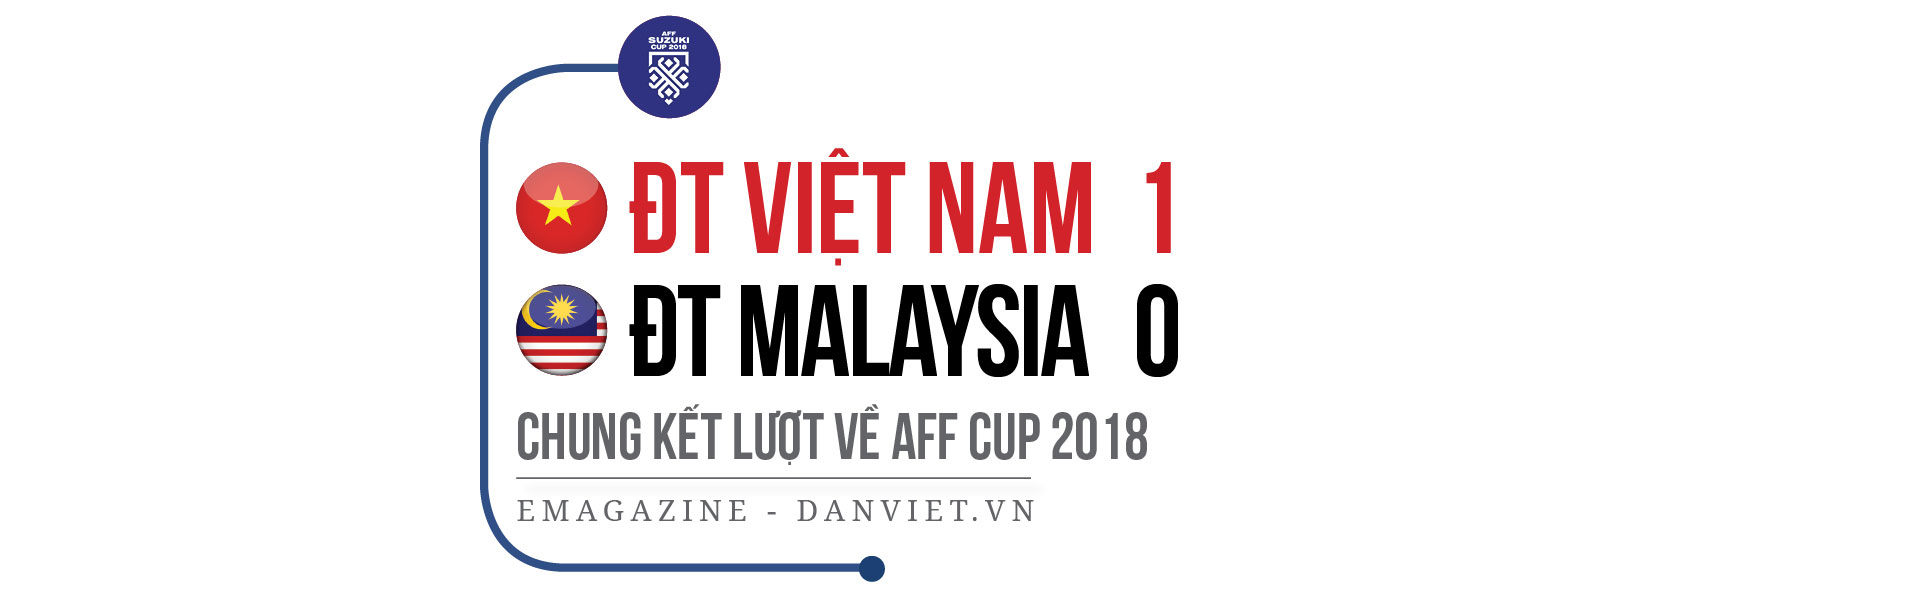 3 khoảnh khắc vàng của ĐT Việt Nam trong lịch sử AFF Cup - Ảnh 5.